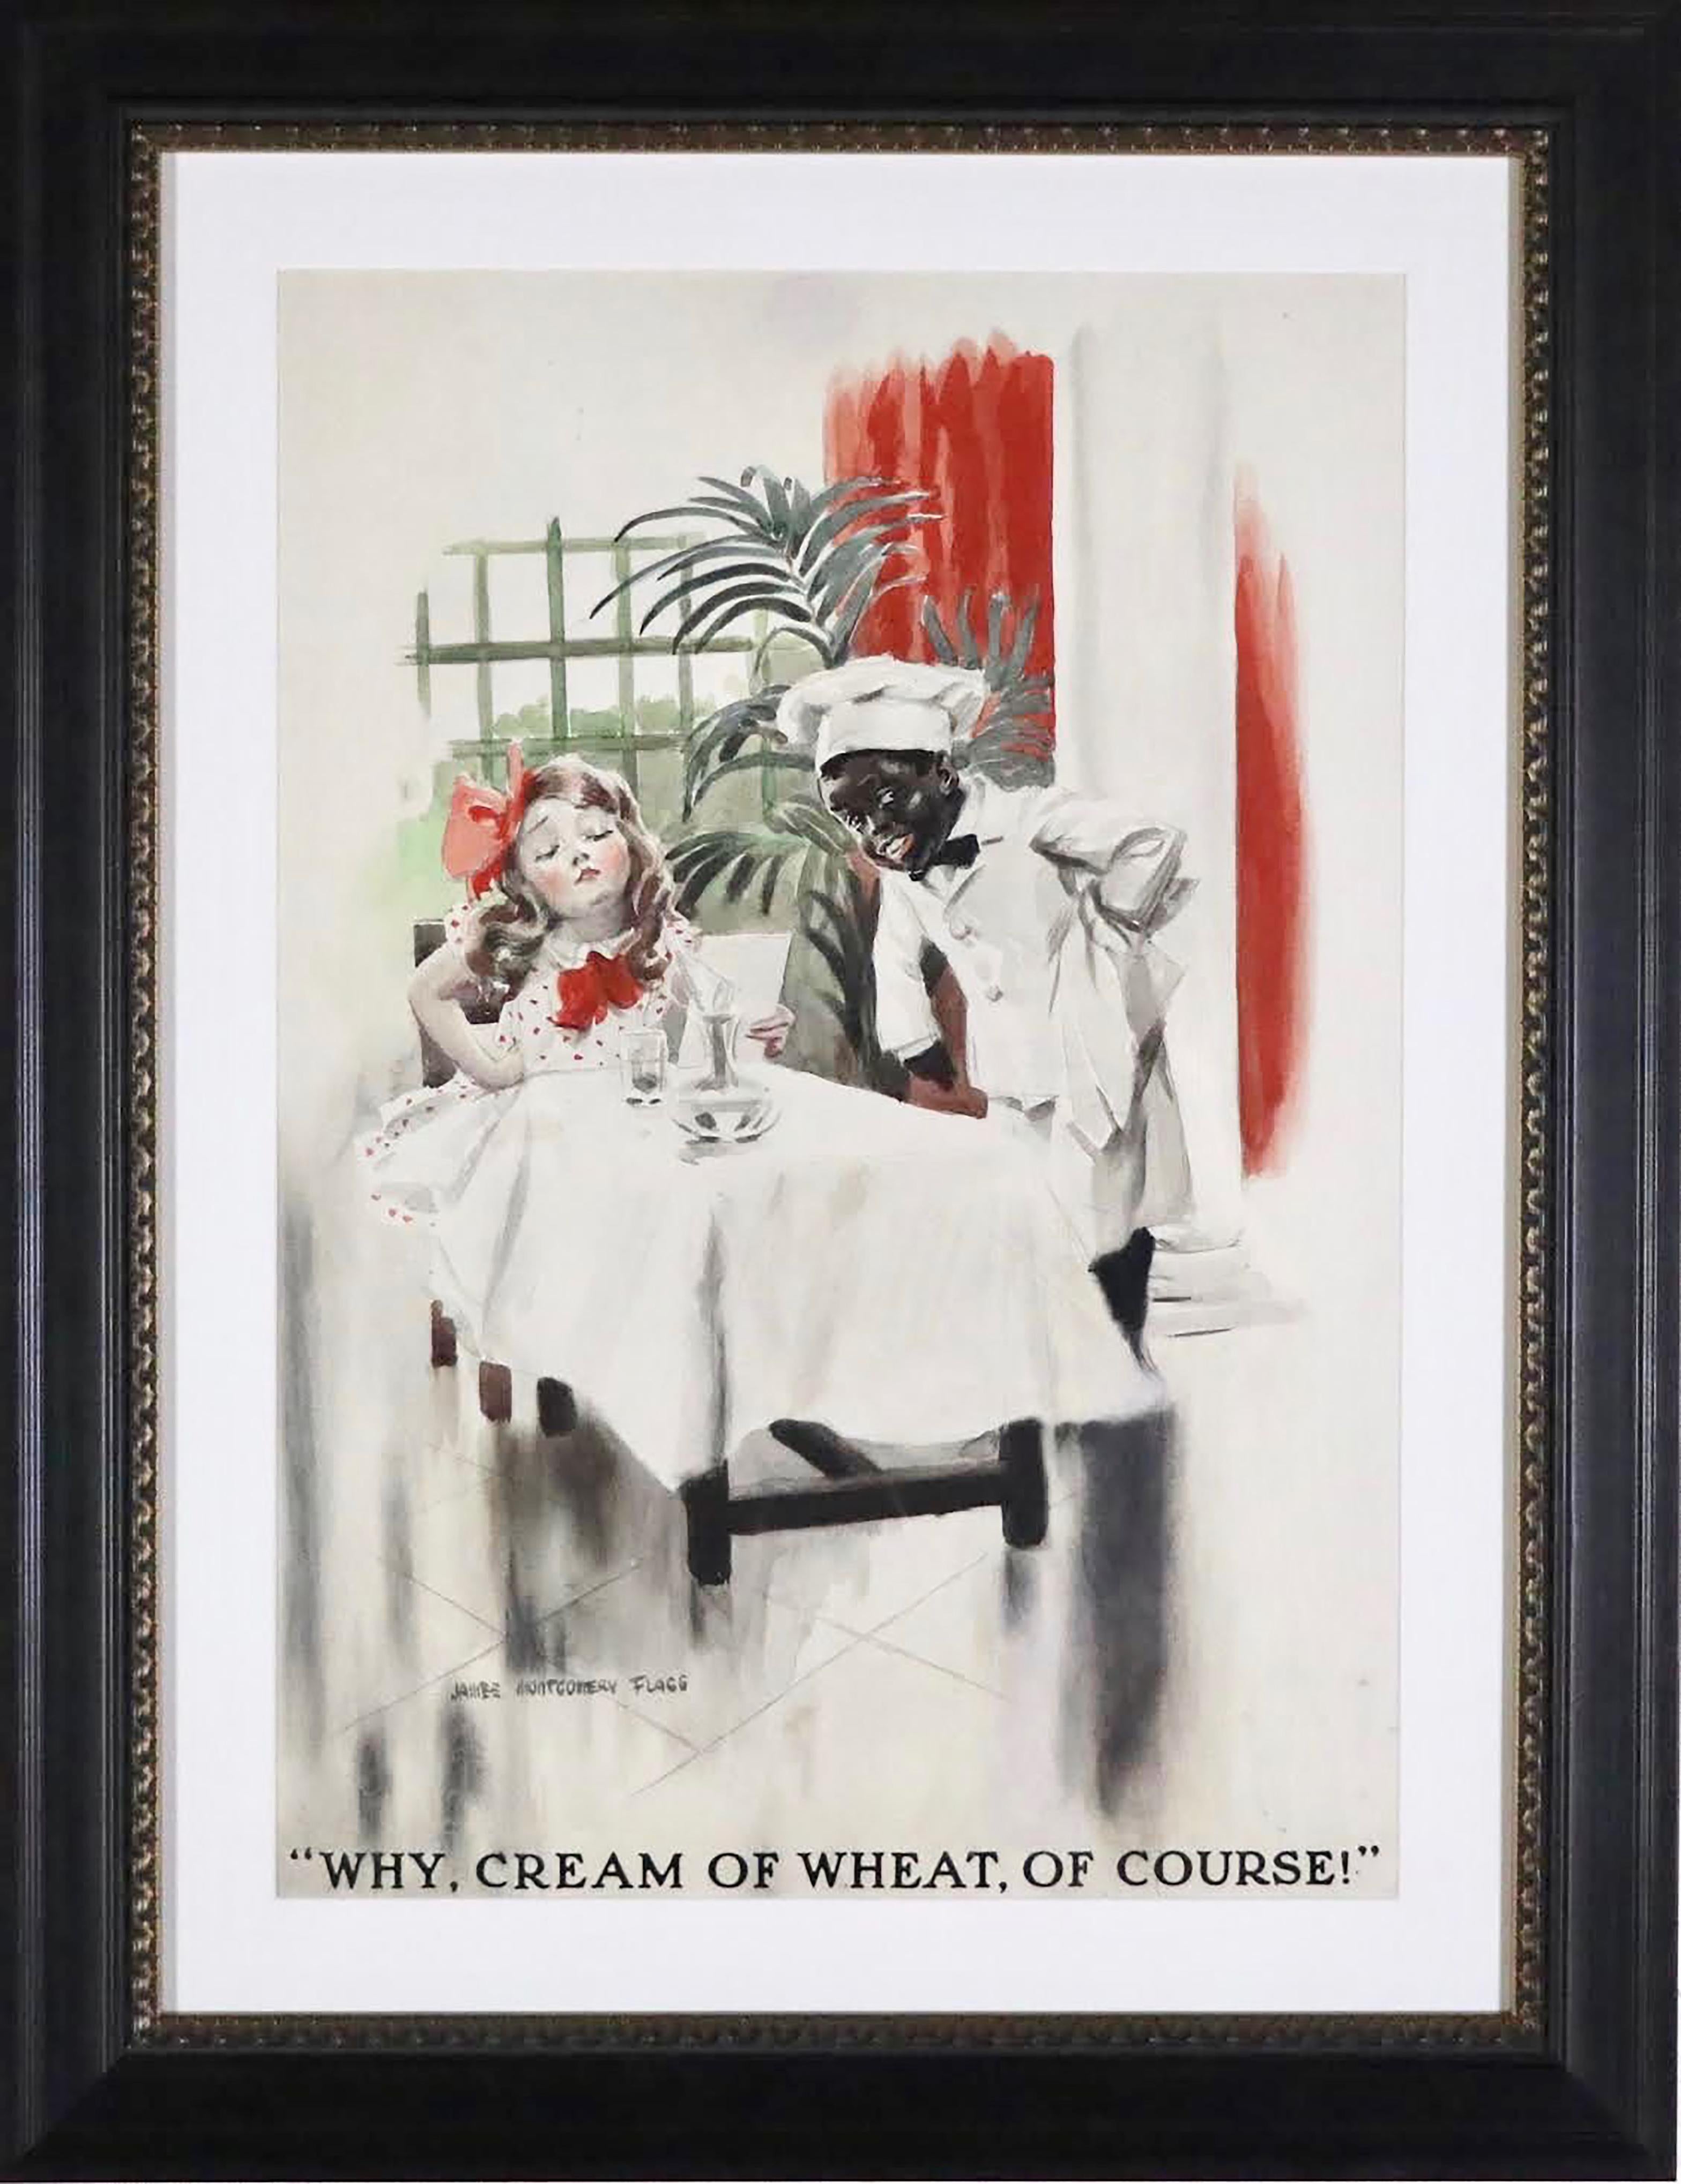 Ad publicitaire Crème de blé - Art de James Montgomery Flagg